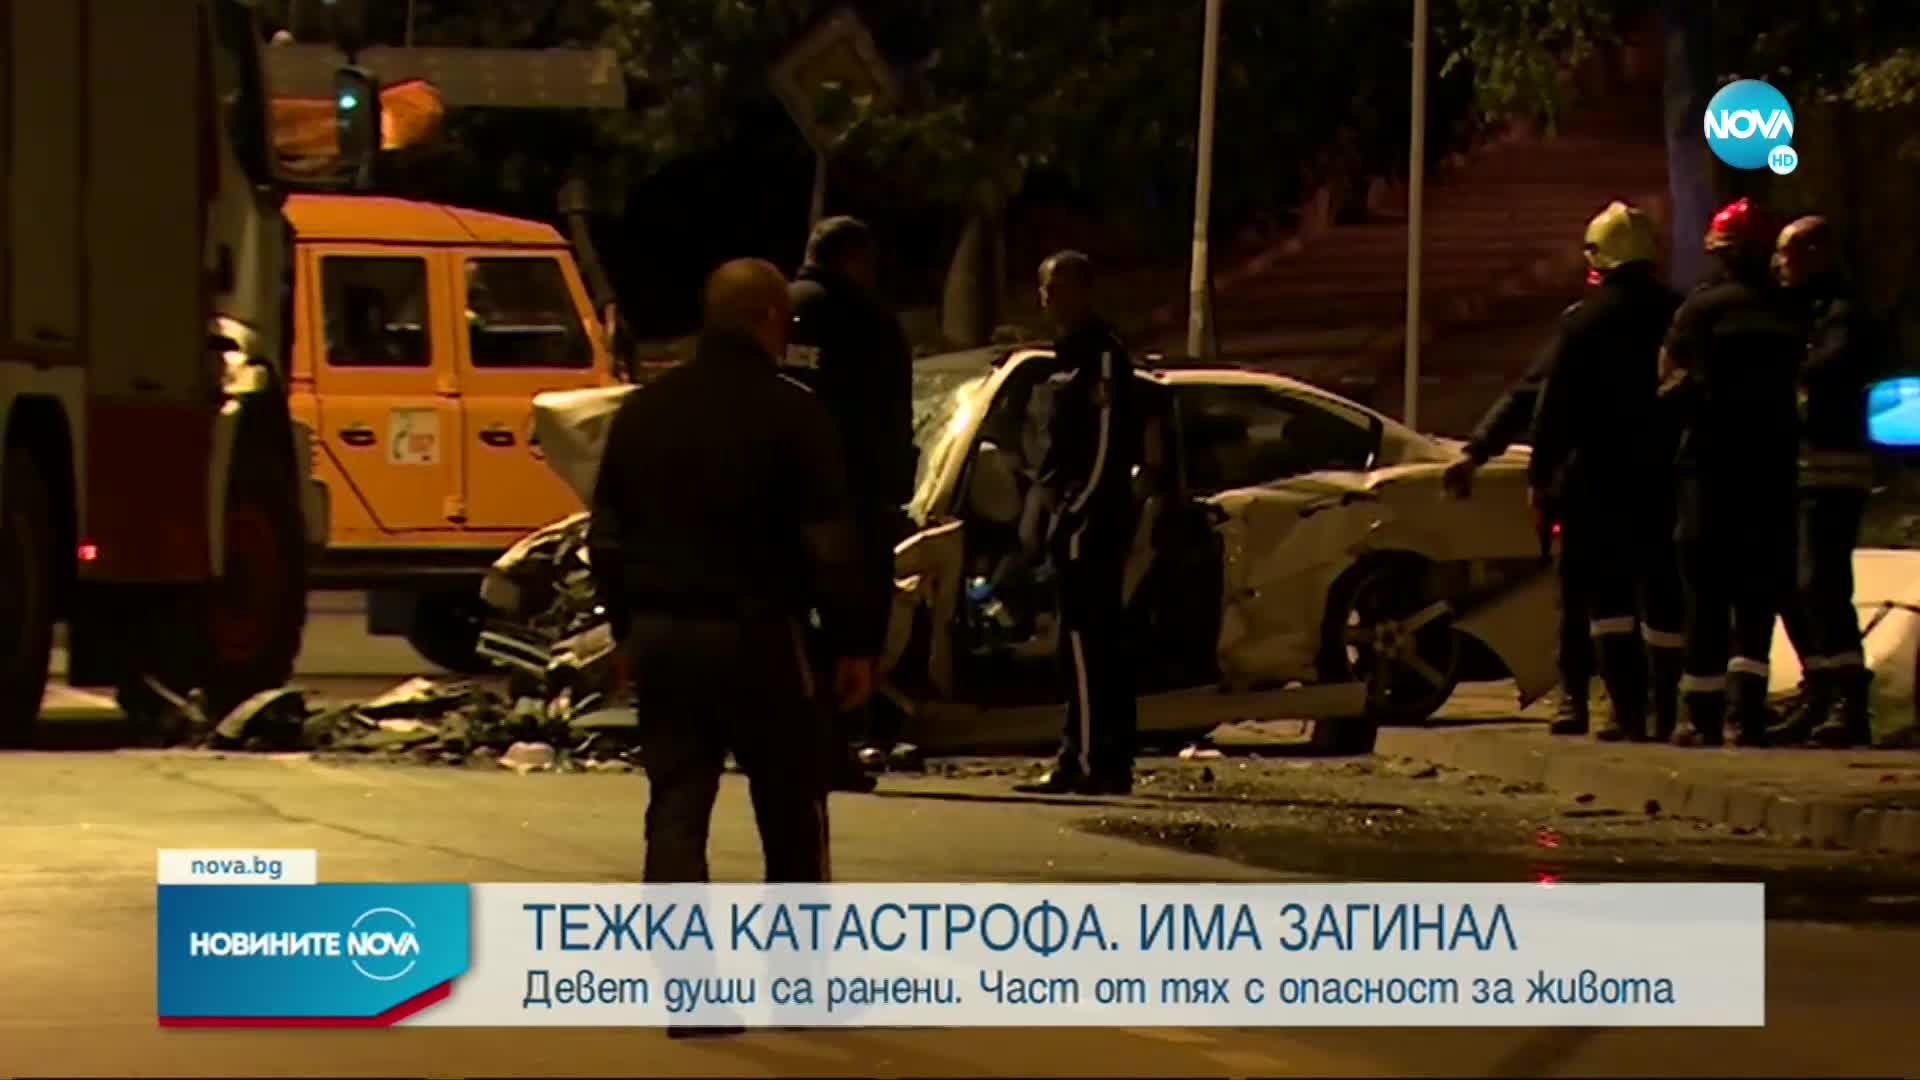 8 тийнейджъри са сред ранените при катастрофата край София, разследват причините